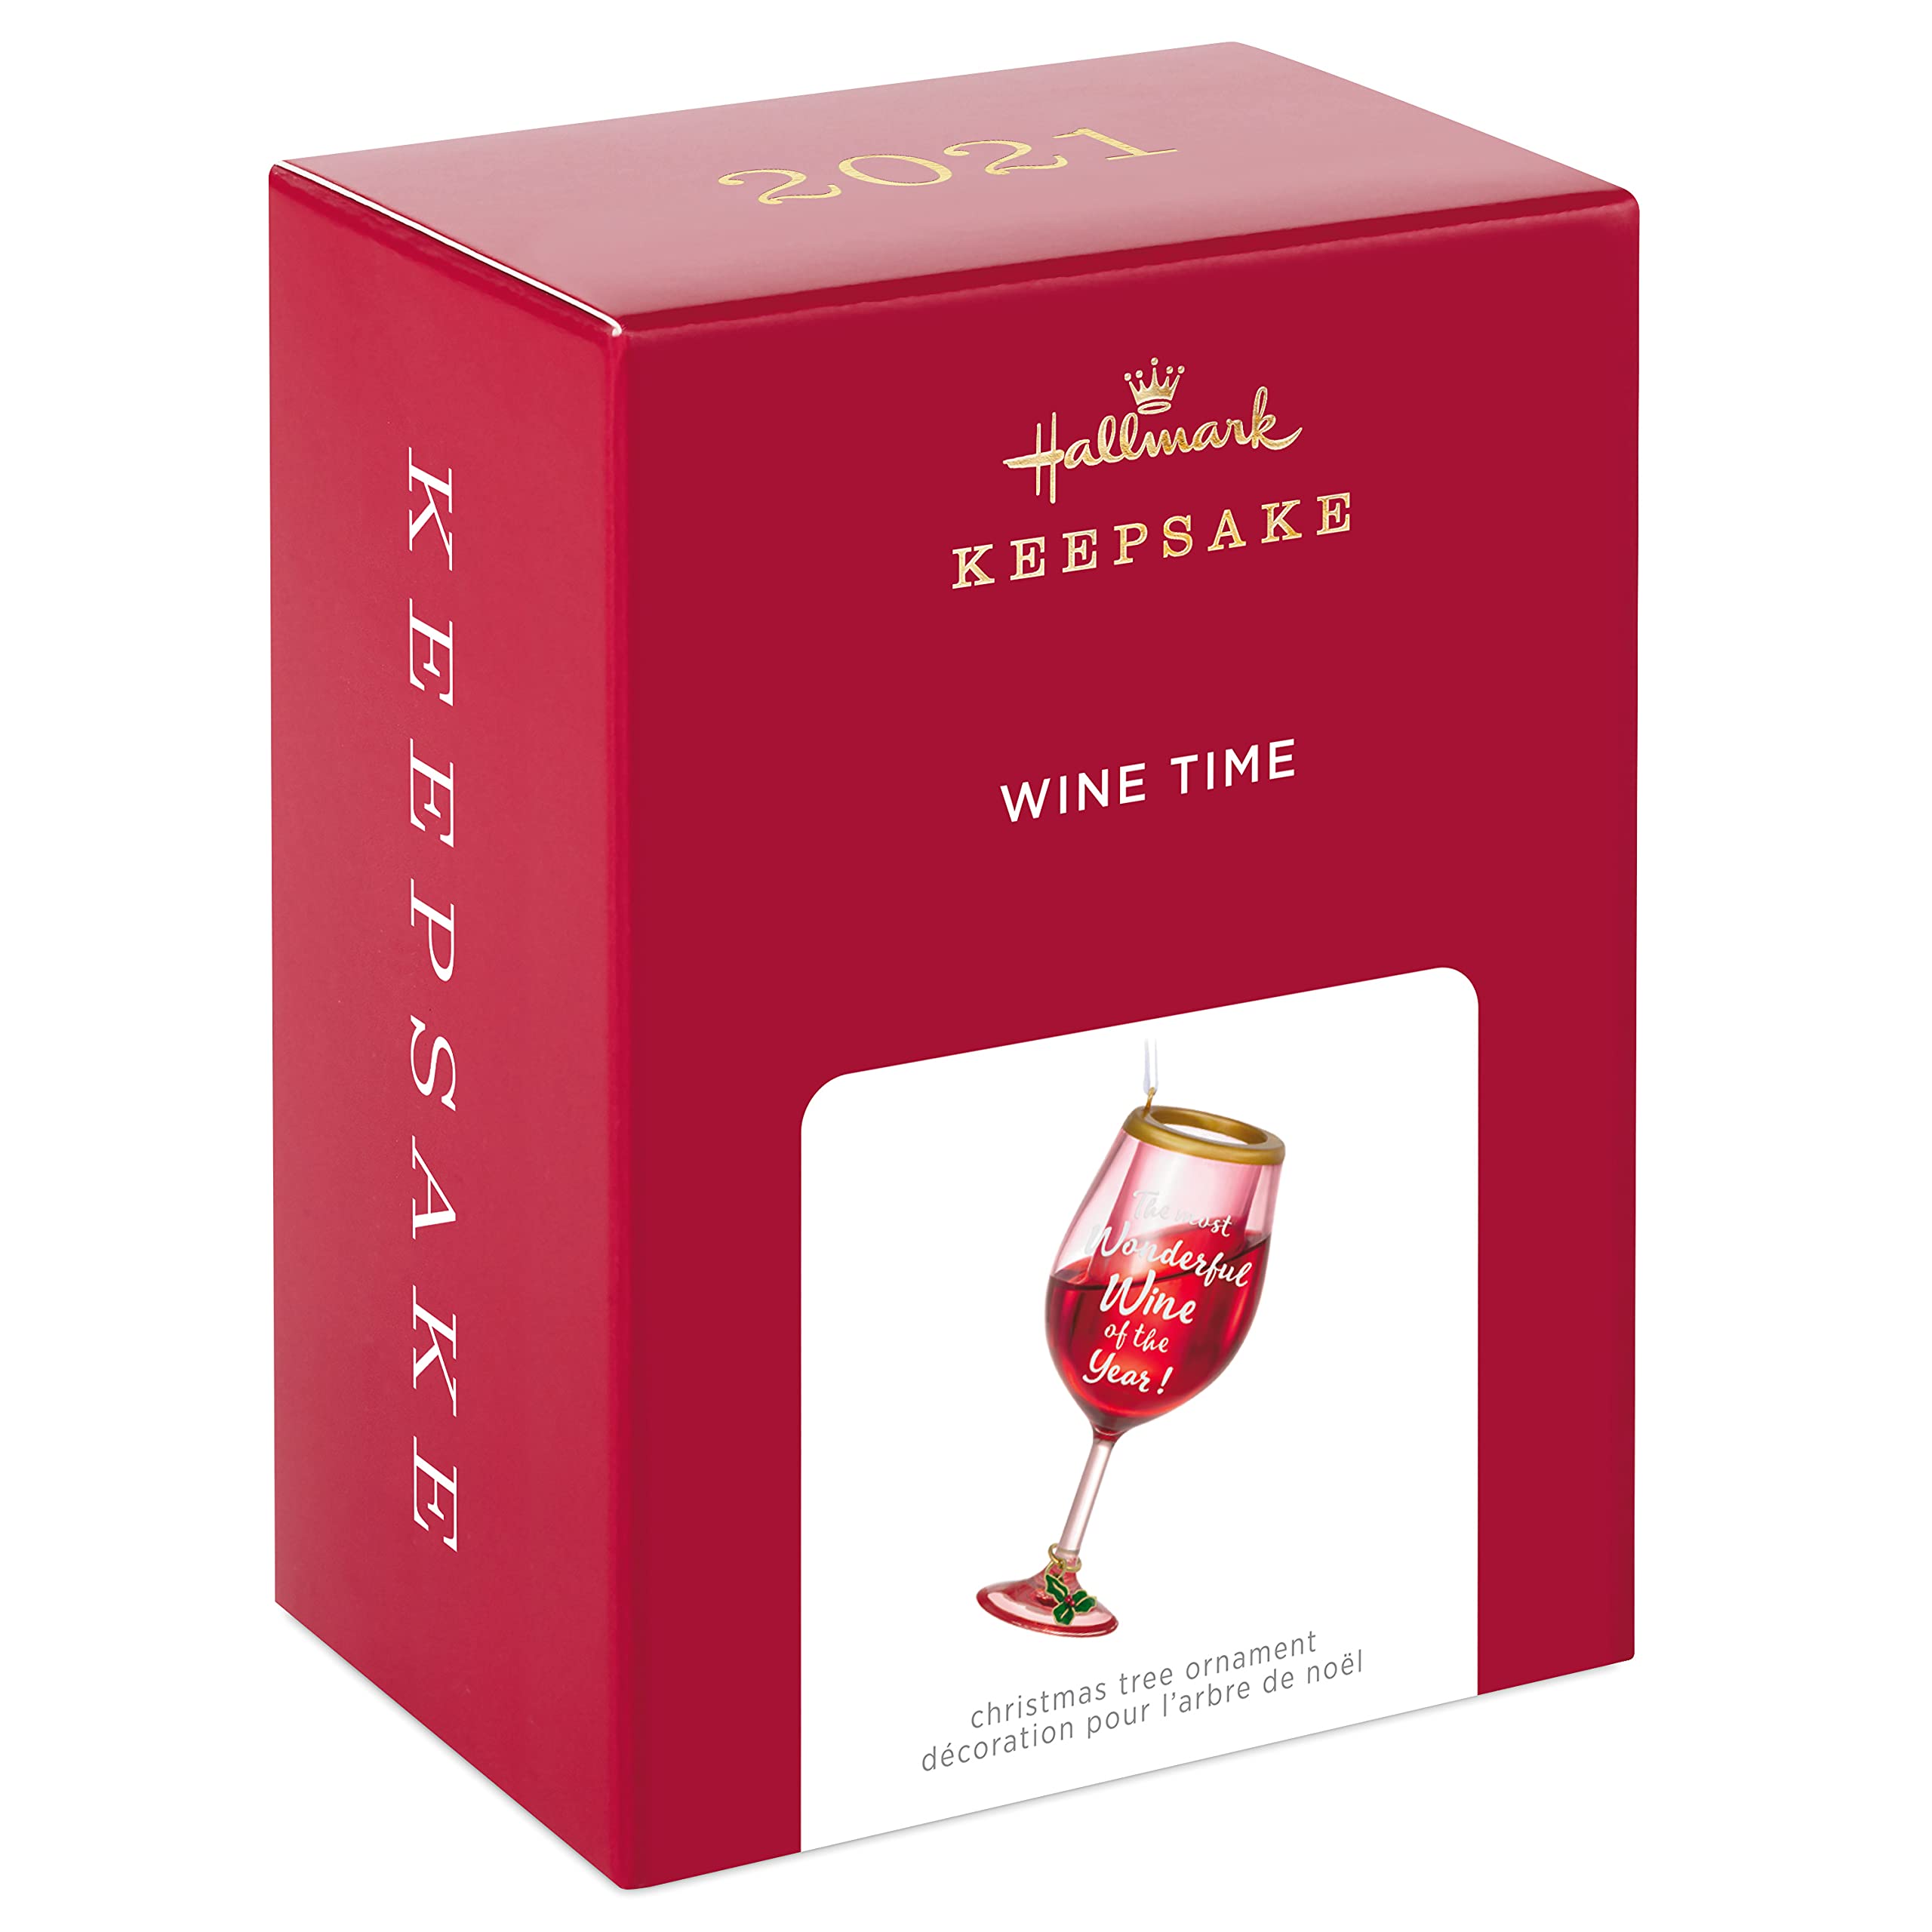 Wine Time Hallmark Keepsake Christmas Ornament 2021